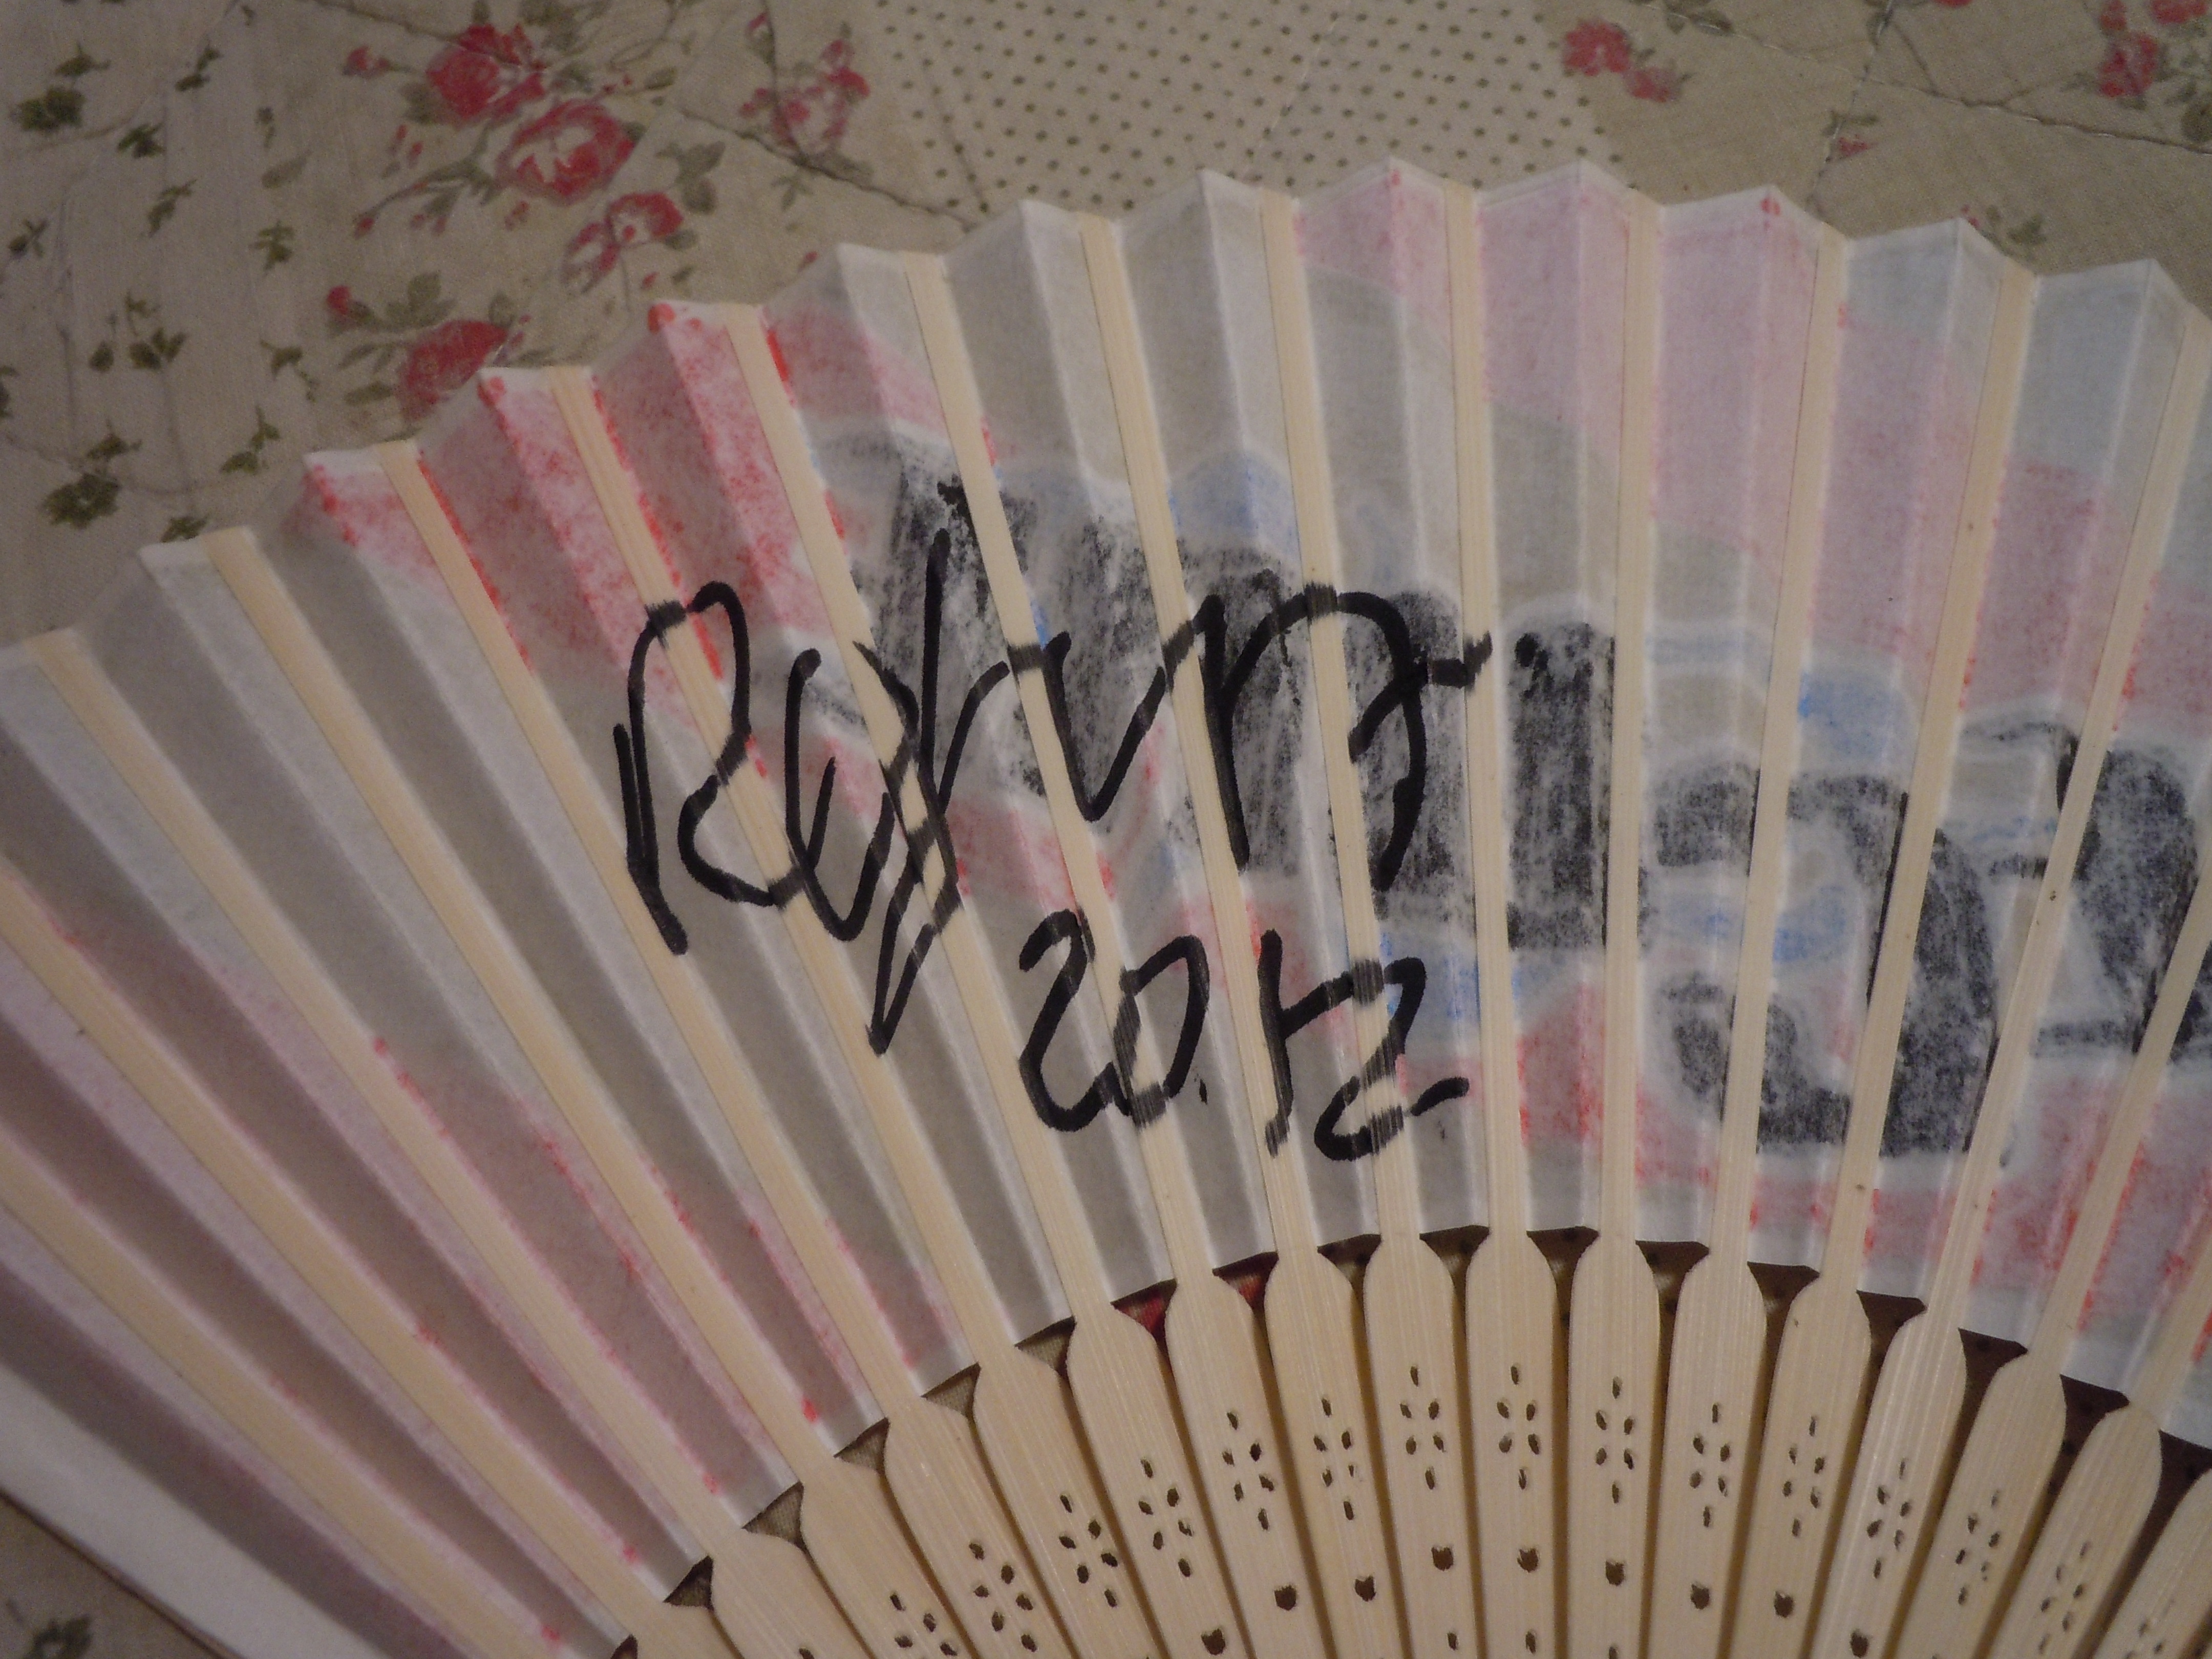 Kazukos Cure fan signed by Robert